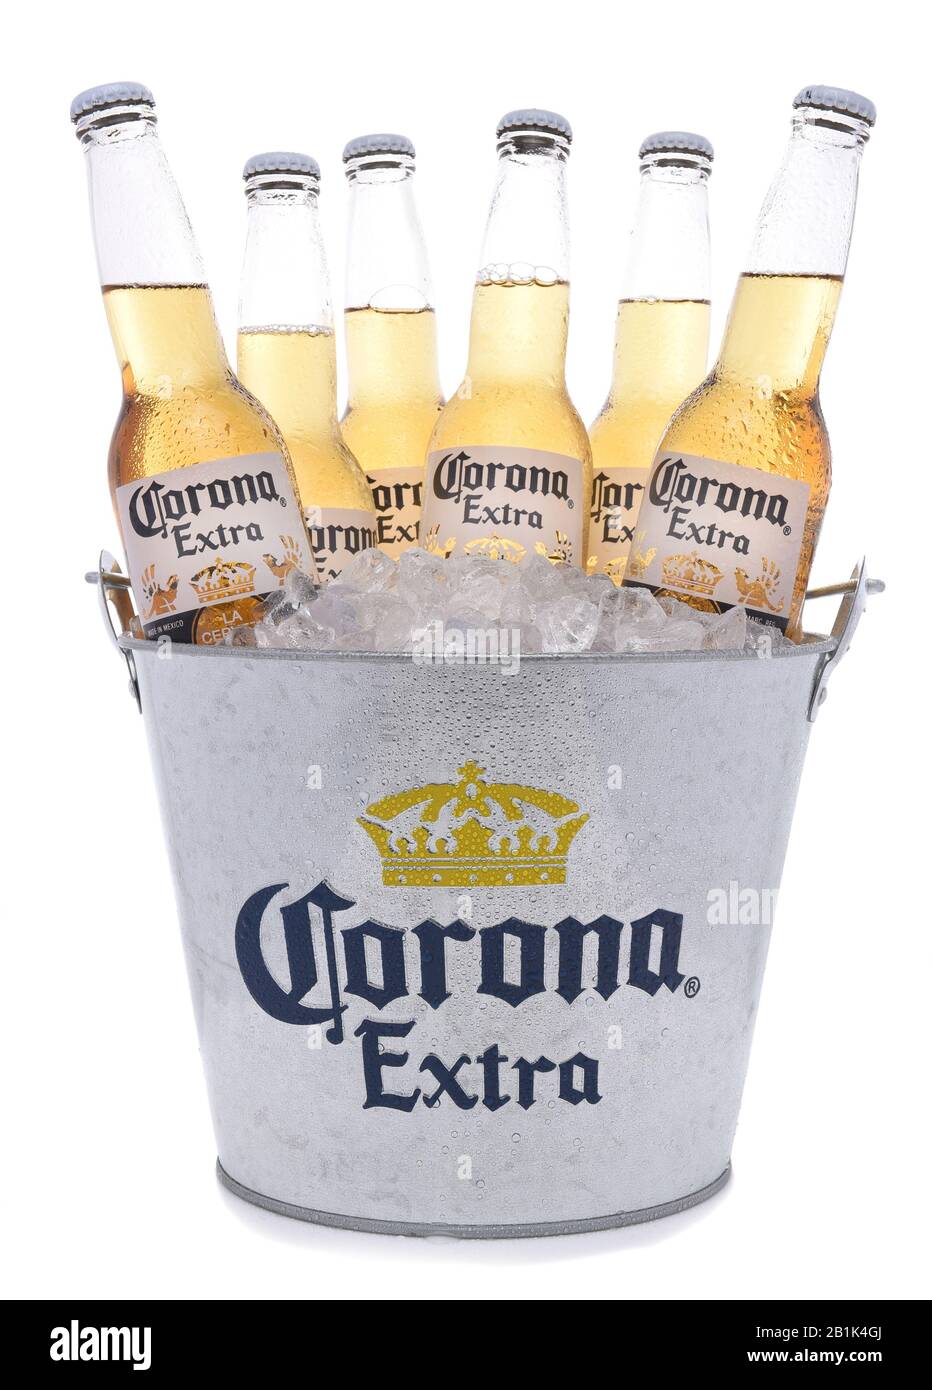 Irvine, CALIFORNIE - 27 NOVEMBRE 2017 : seau de bouteilles de bière Corona Extra. Corona est la bière importée la plus populaire aux États-Unis. Banque D'Images